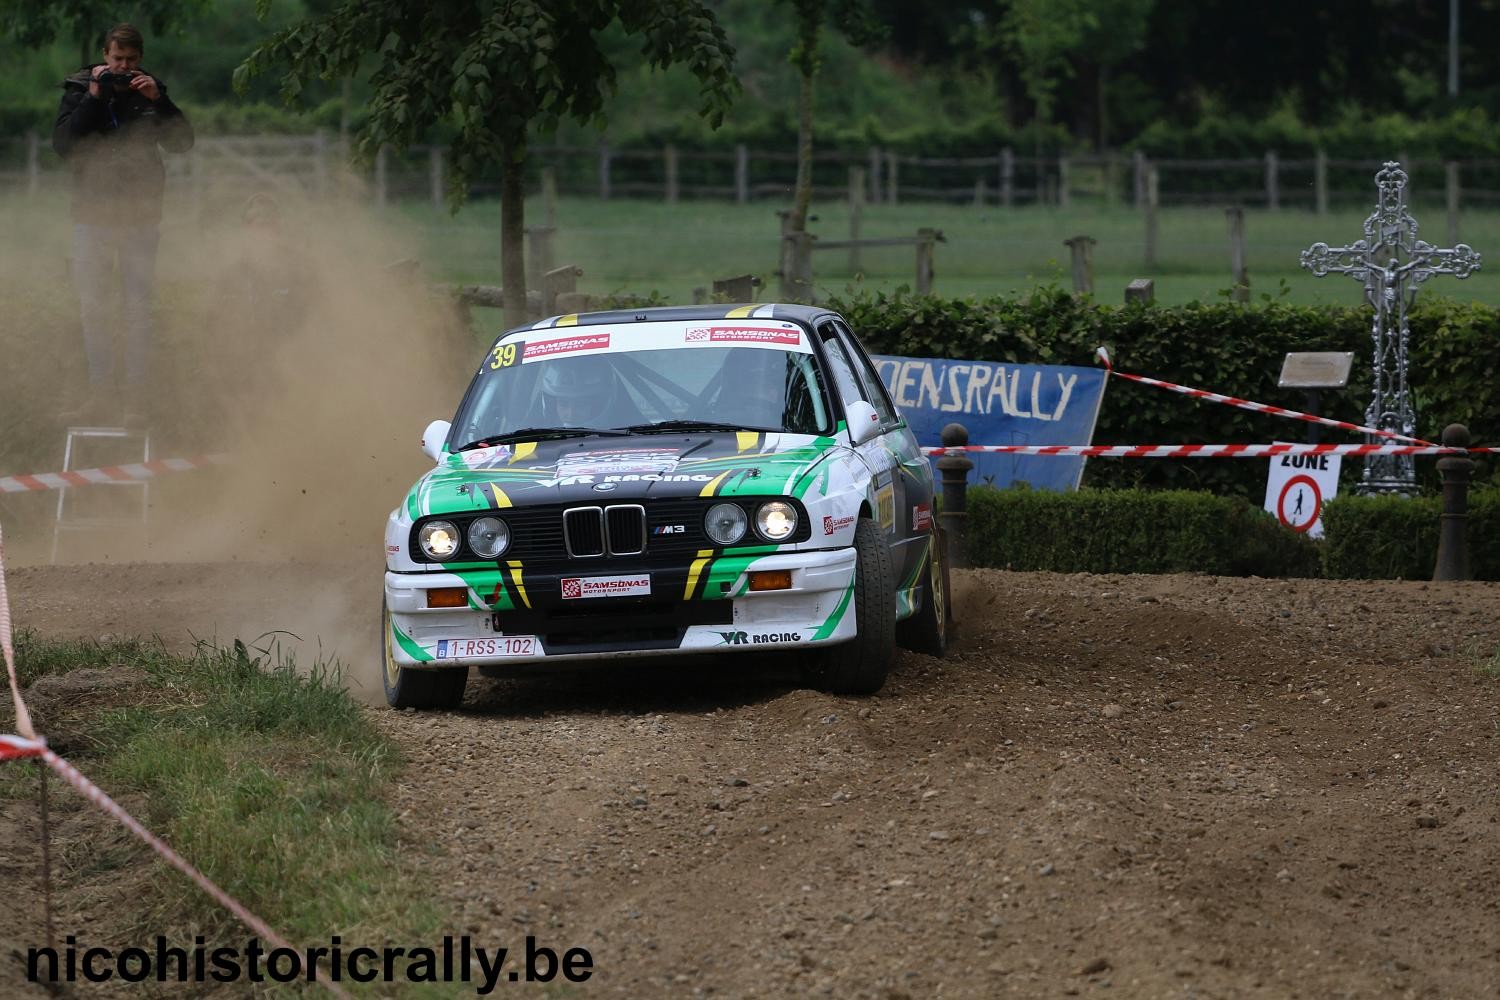 Forfait voor Tom van Rompuy en Jens Vanoverschelde in de Condroz Rallye !